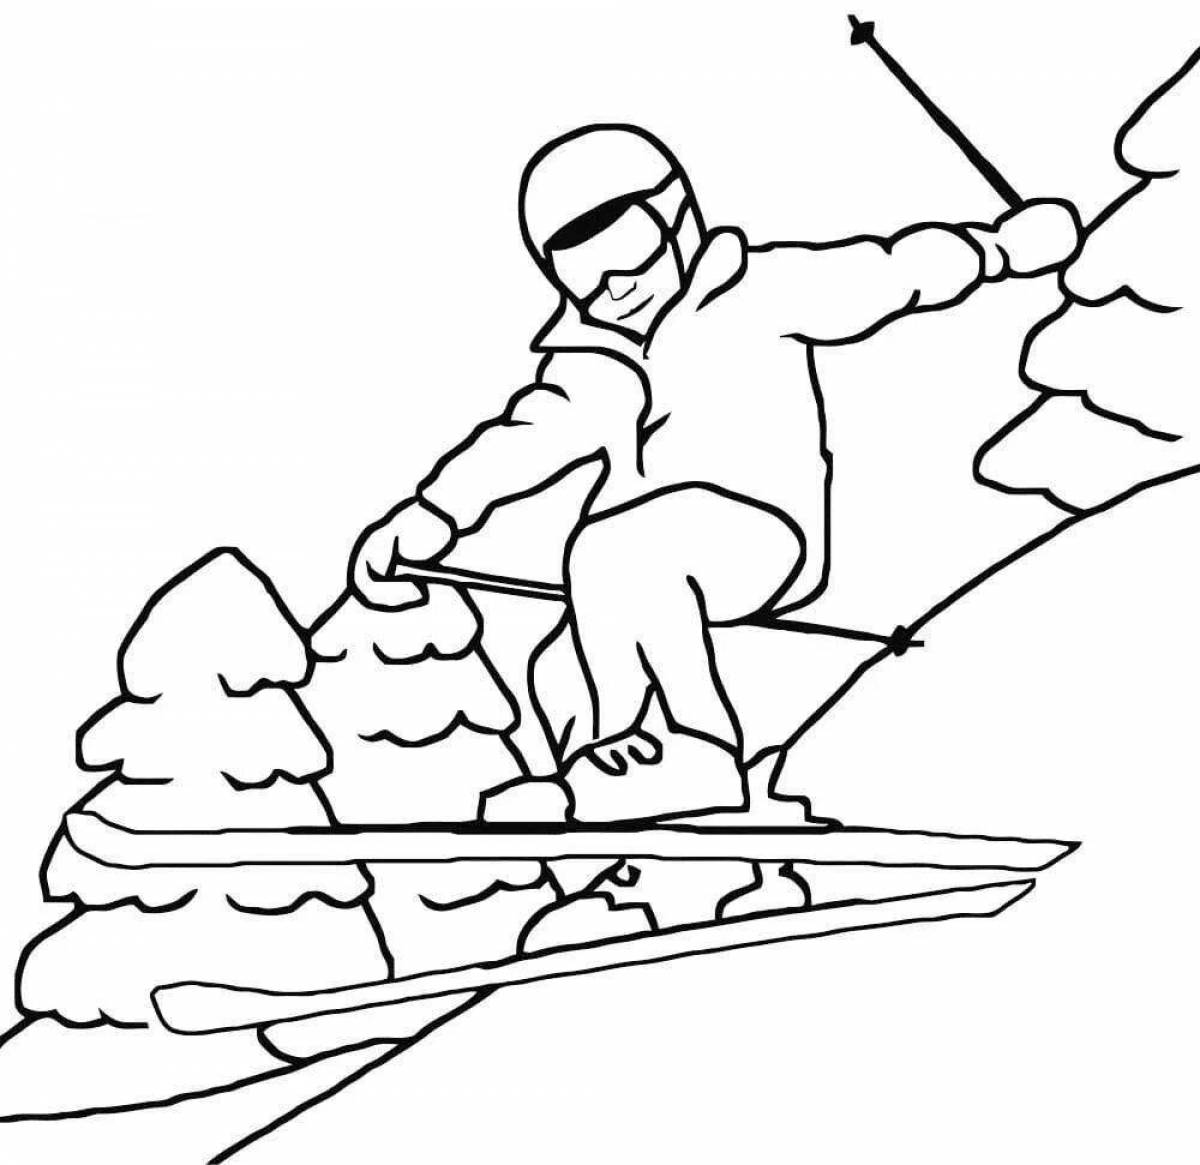 A tenacious man on skis